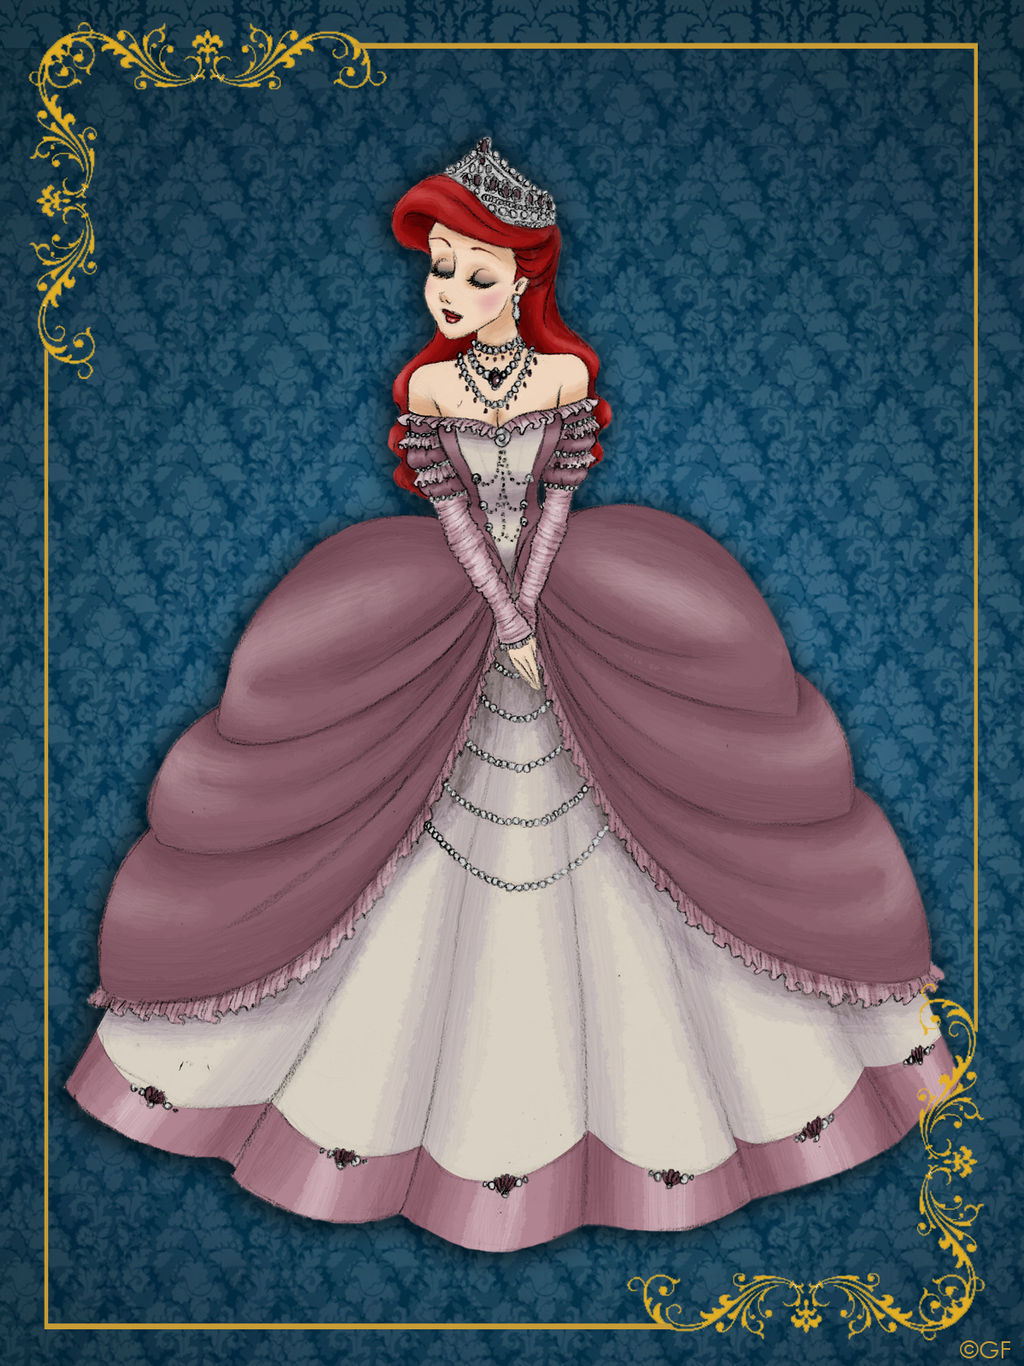 Queen Ariel - Disney Queen designer collection